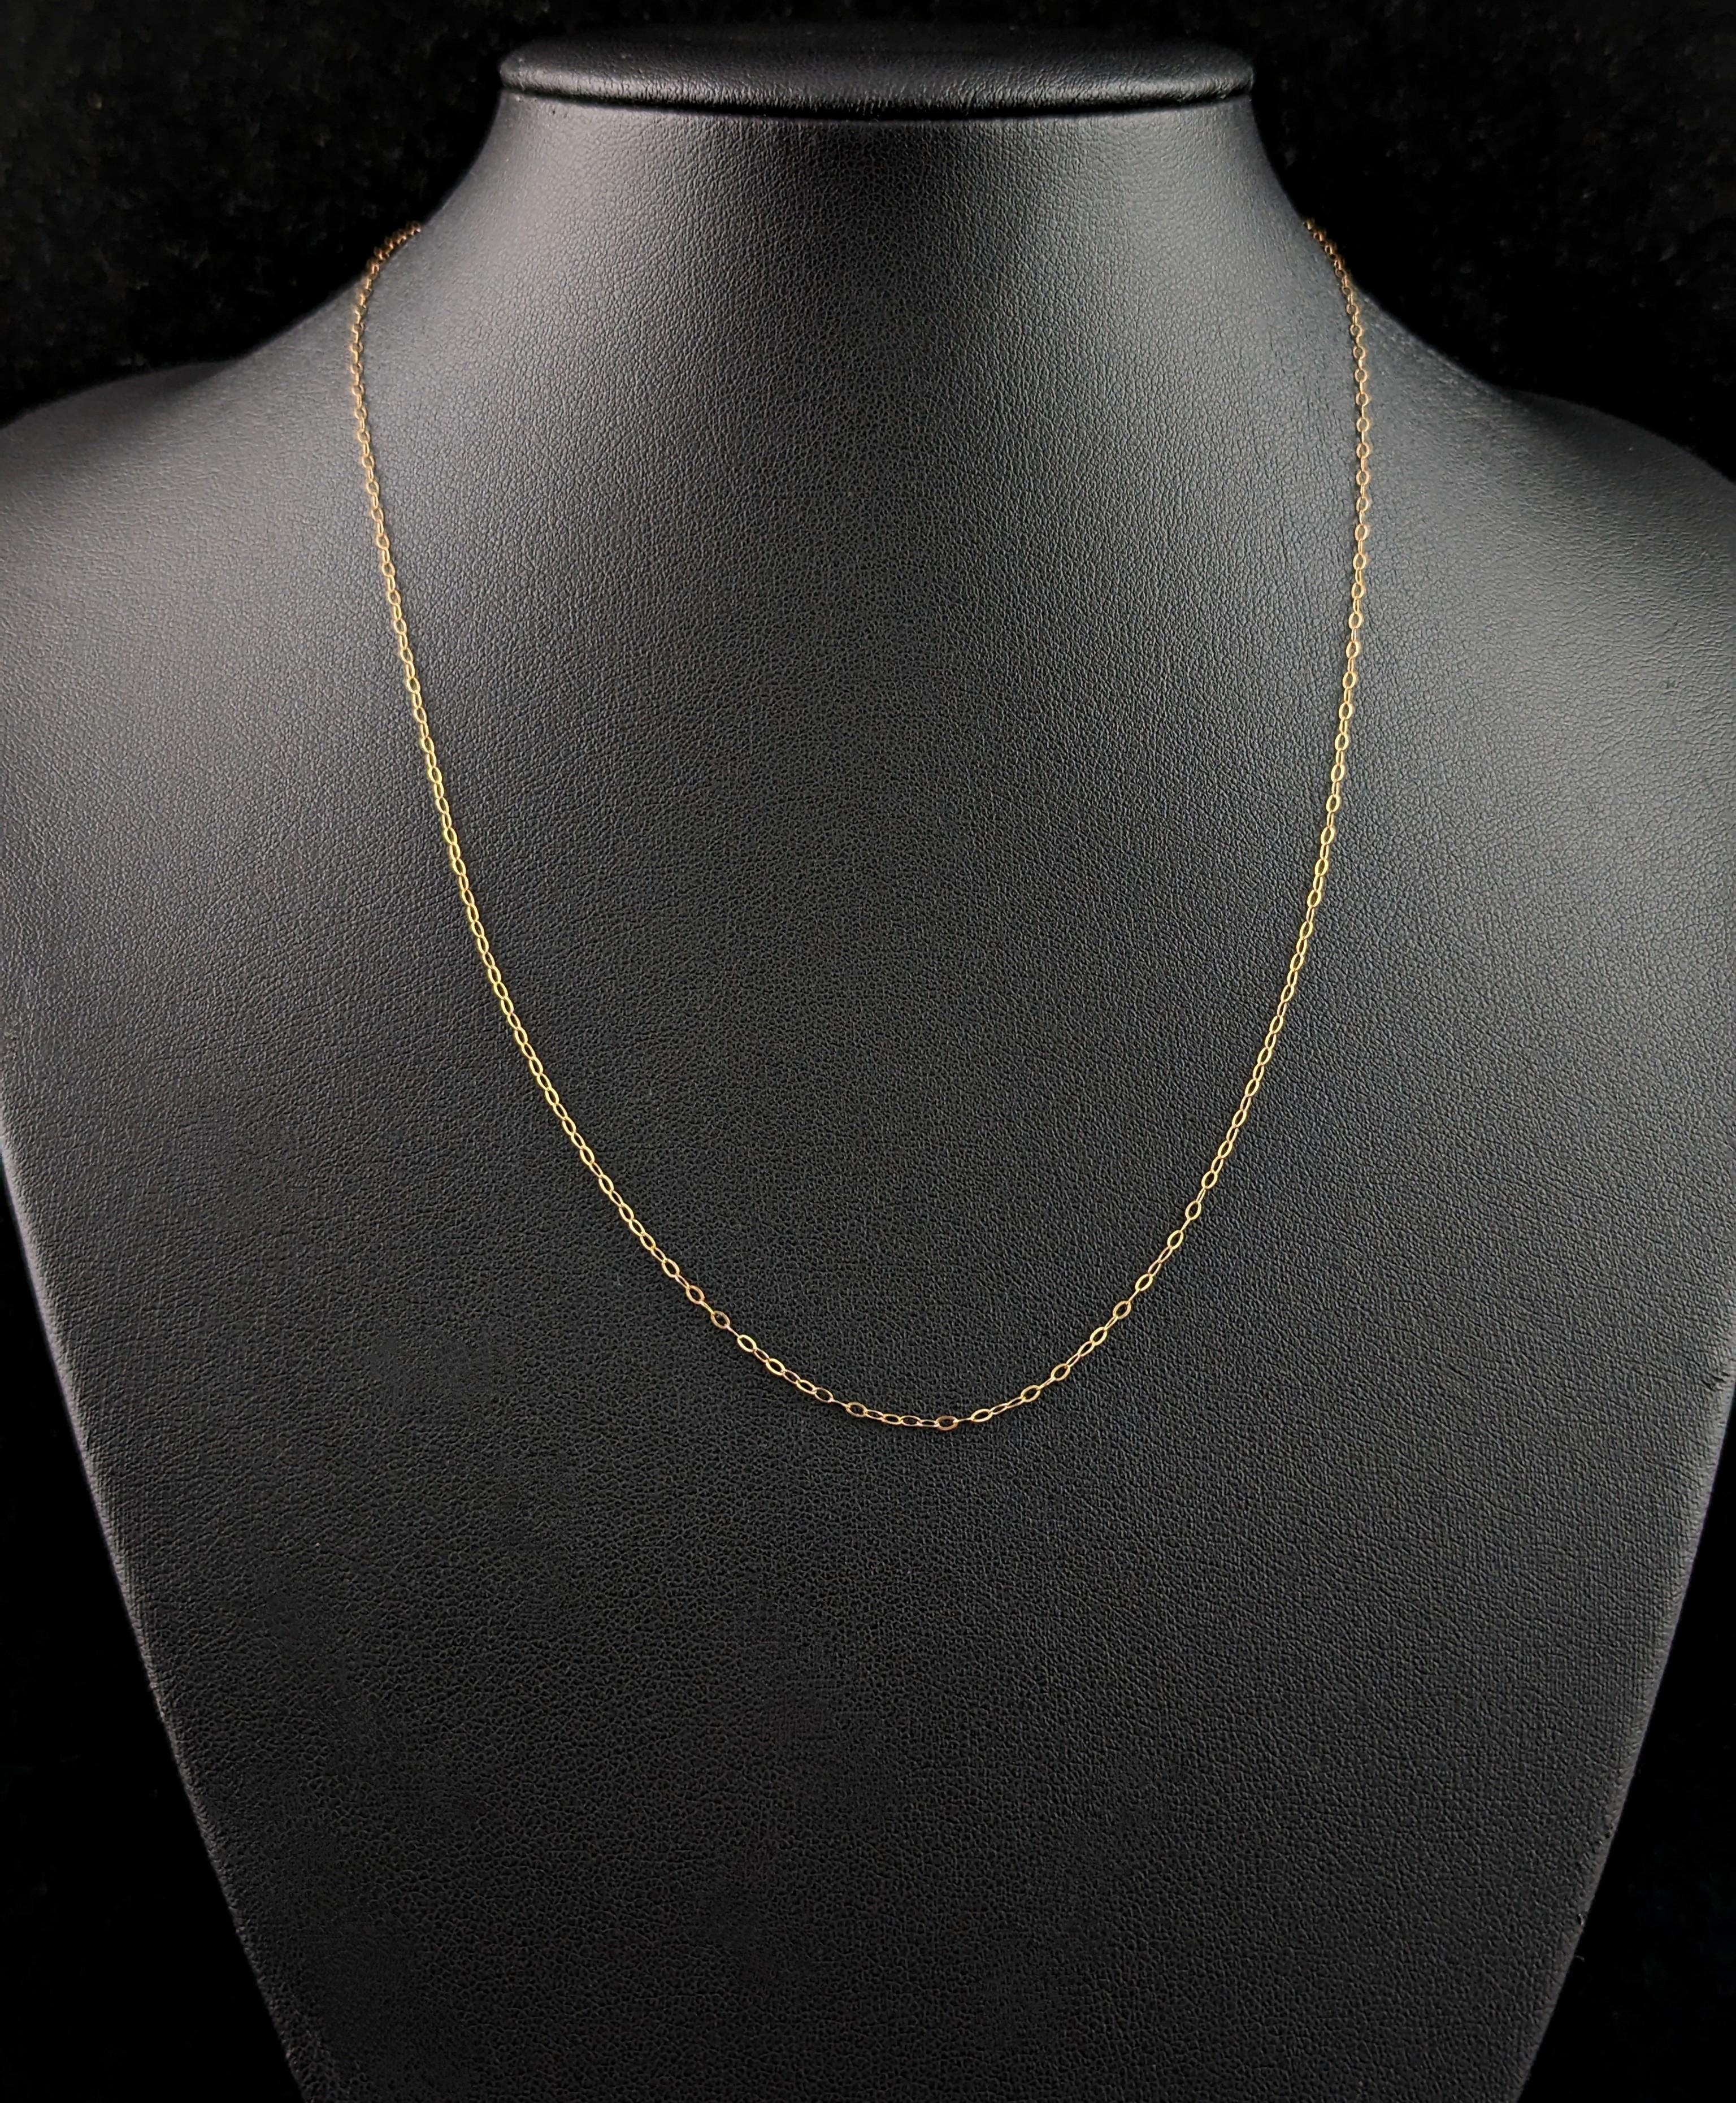 Une chaîne fine et délicate en or 9ct comme celle-ci accompagnera parfaitement vos petits médaillons, pendentifs et breloques préférés.

Il s'agit d'un fin maillon de trace rolo en or jaune riche avec un fermoir à anneau à ressort.

Il est d'une